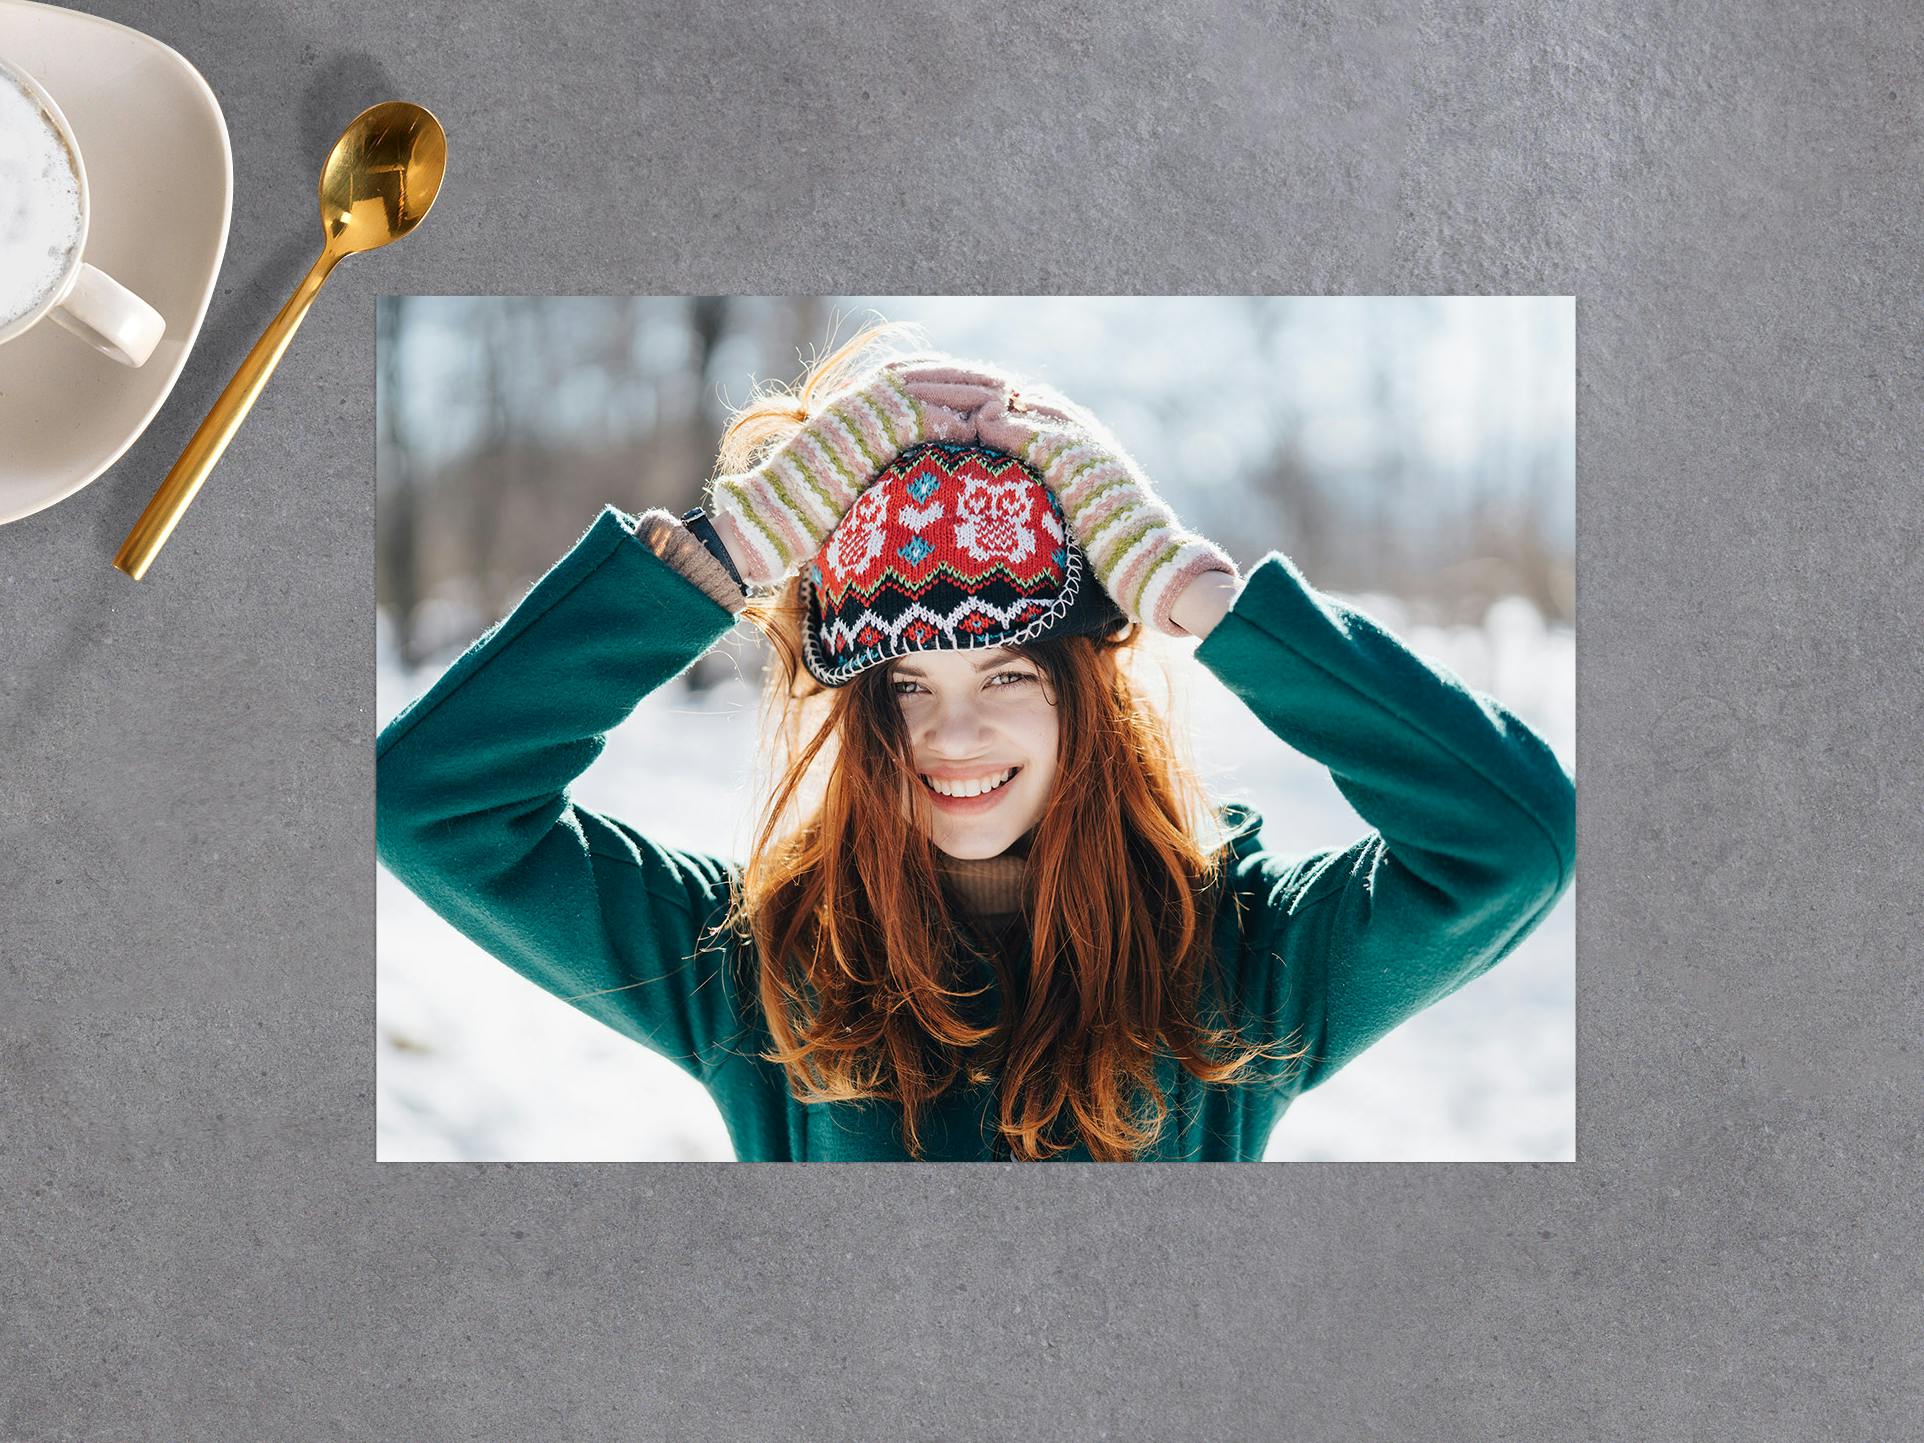 Foto revelada en papel de 20 cm con una imagen de una chica en la nieve